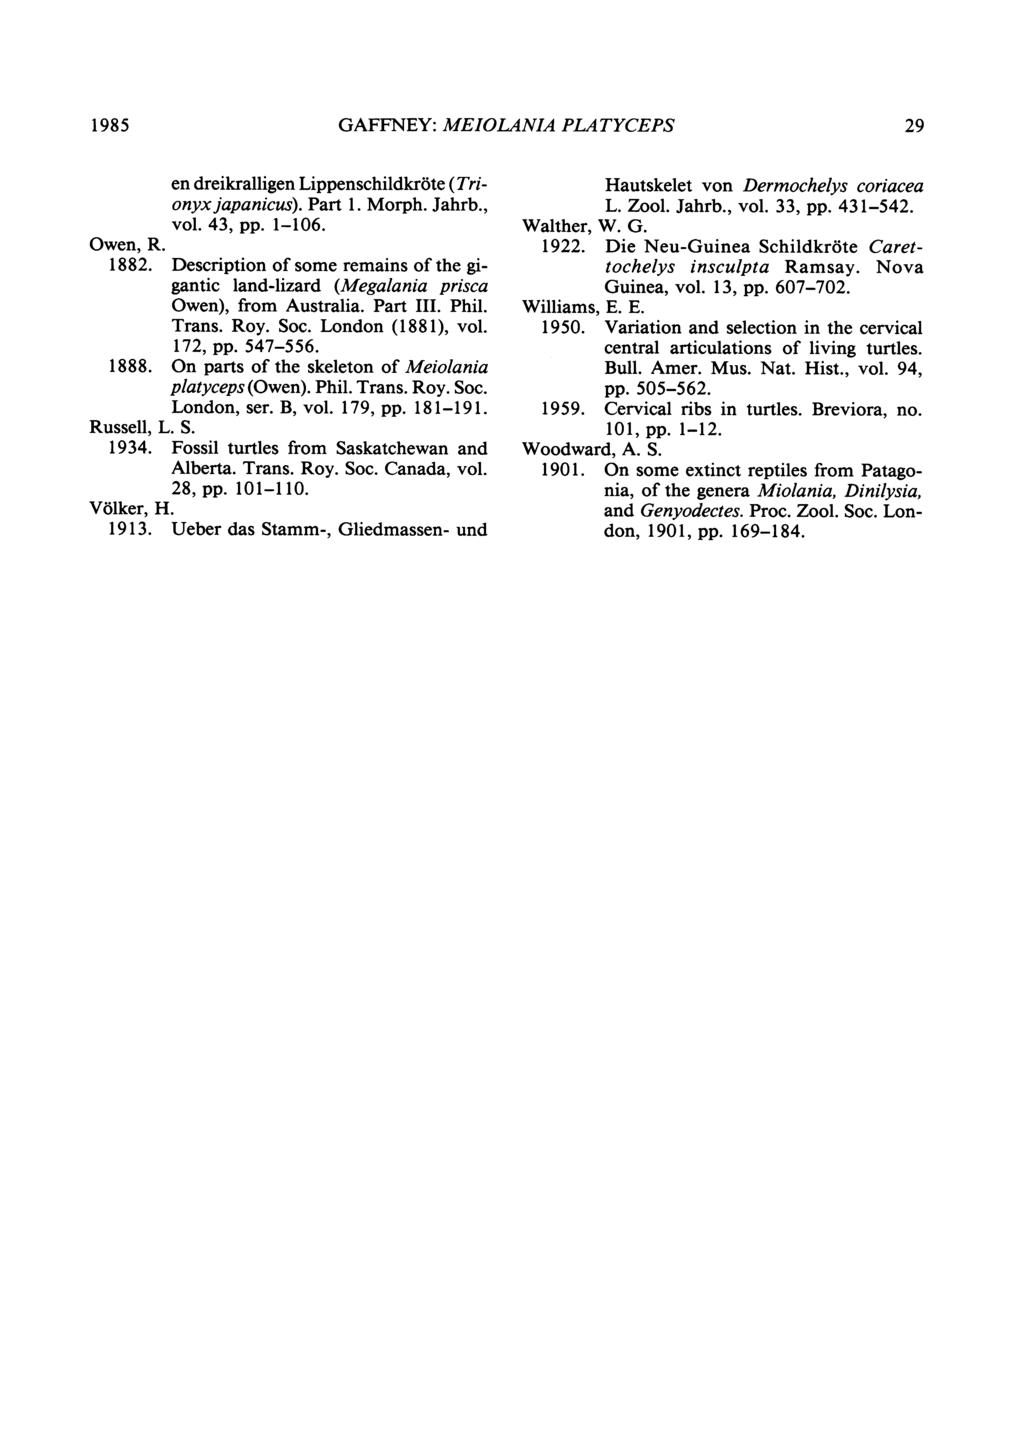 1985 GAFFNEY: MEIOLANIA PL,ATYCEPS 29 en dreikralligen Lippenschildkr6te (Trionyx japanicus). Part 1. Morph. Jahrb., vol. 43, pp. 1-16. Owen, R. 1882.